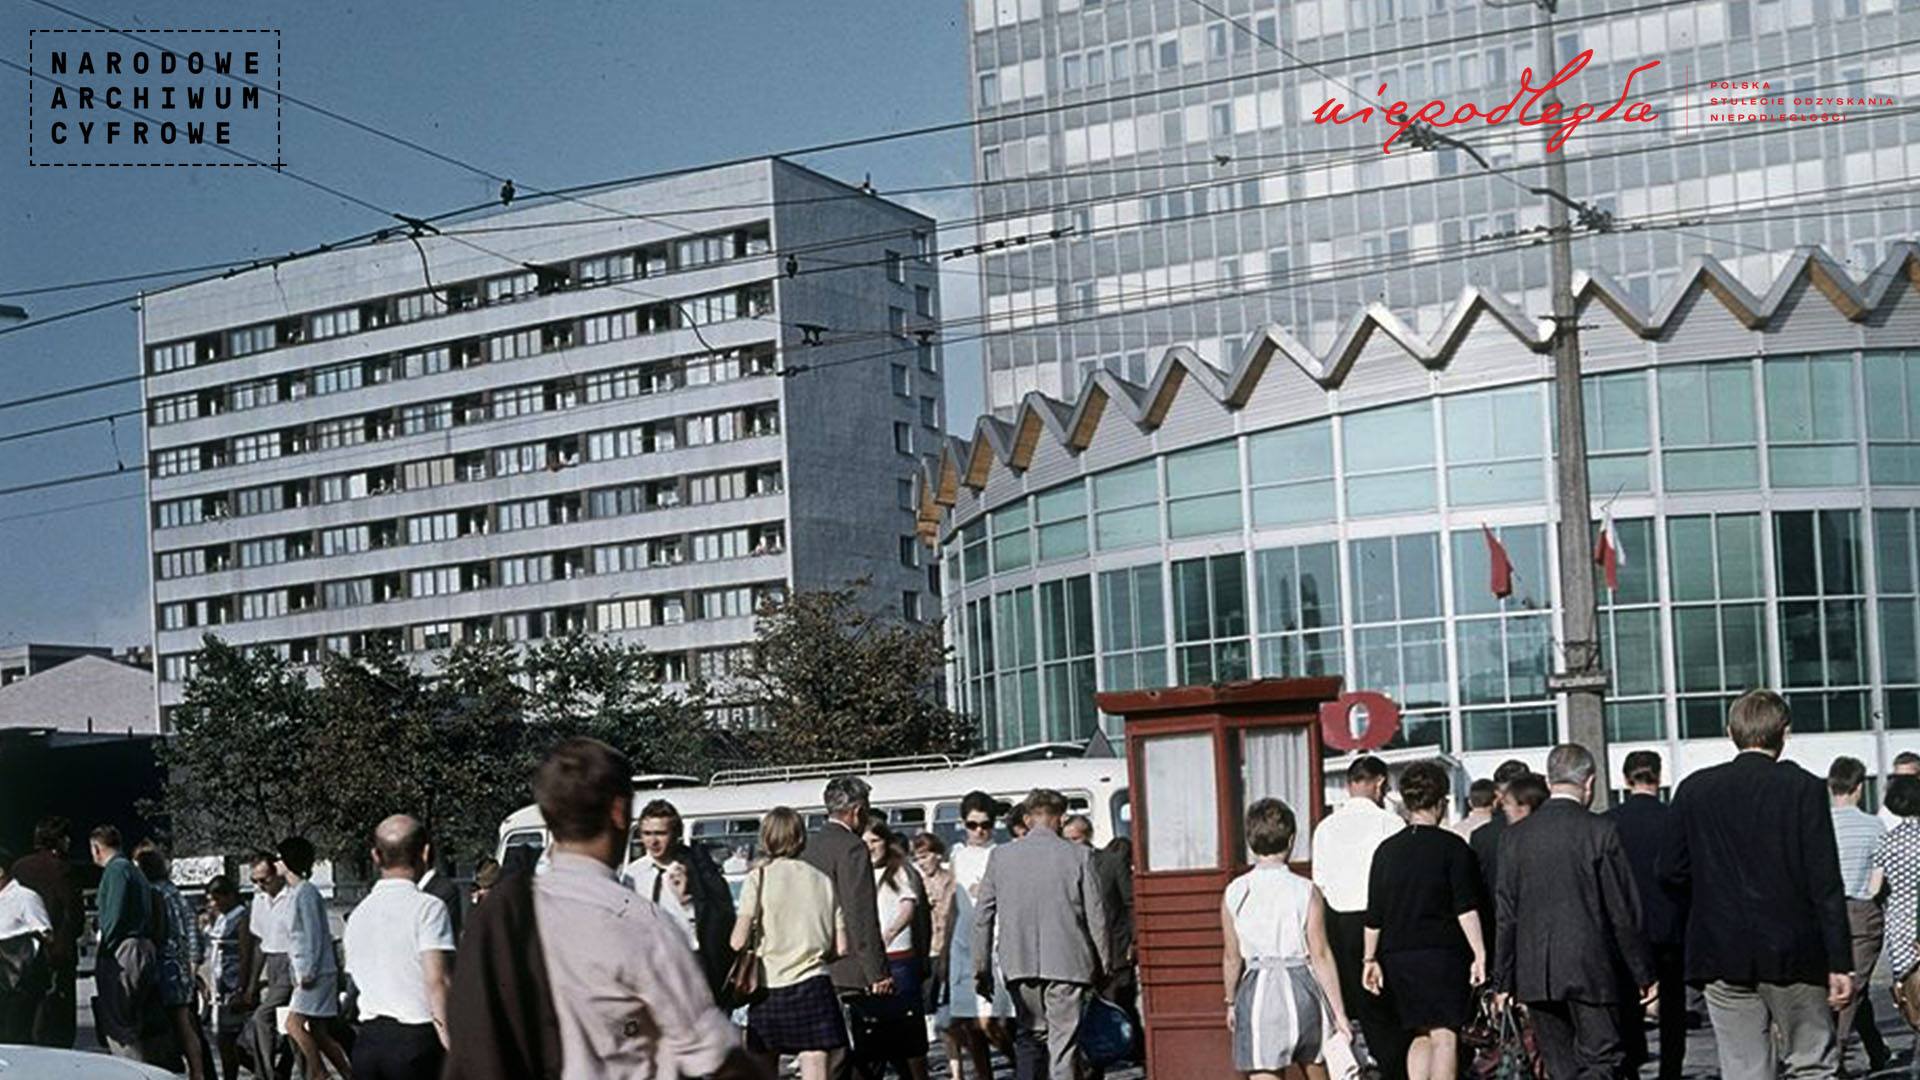 kolorowe zdjecie przedstawiające przejście dla pieszych przy Rotundzie, Warszawa lata 70-te